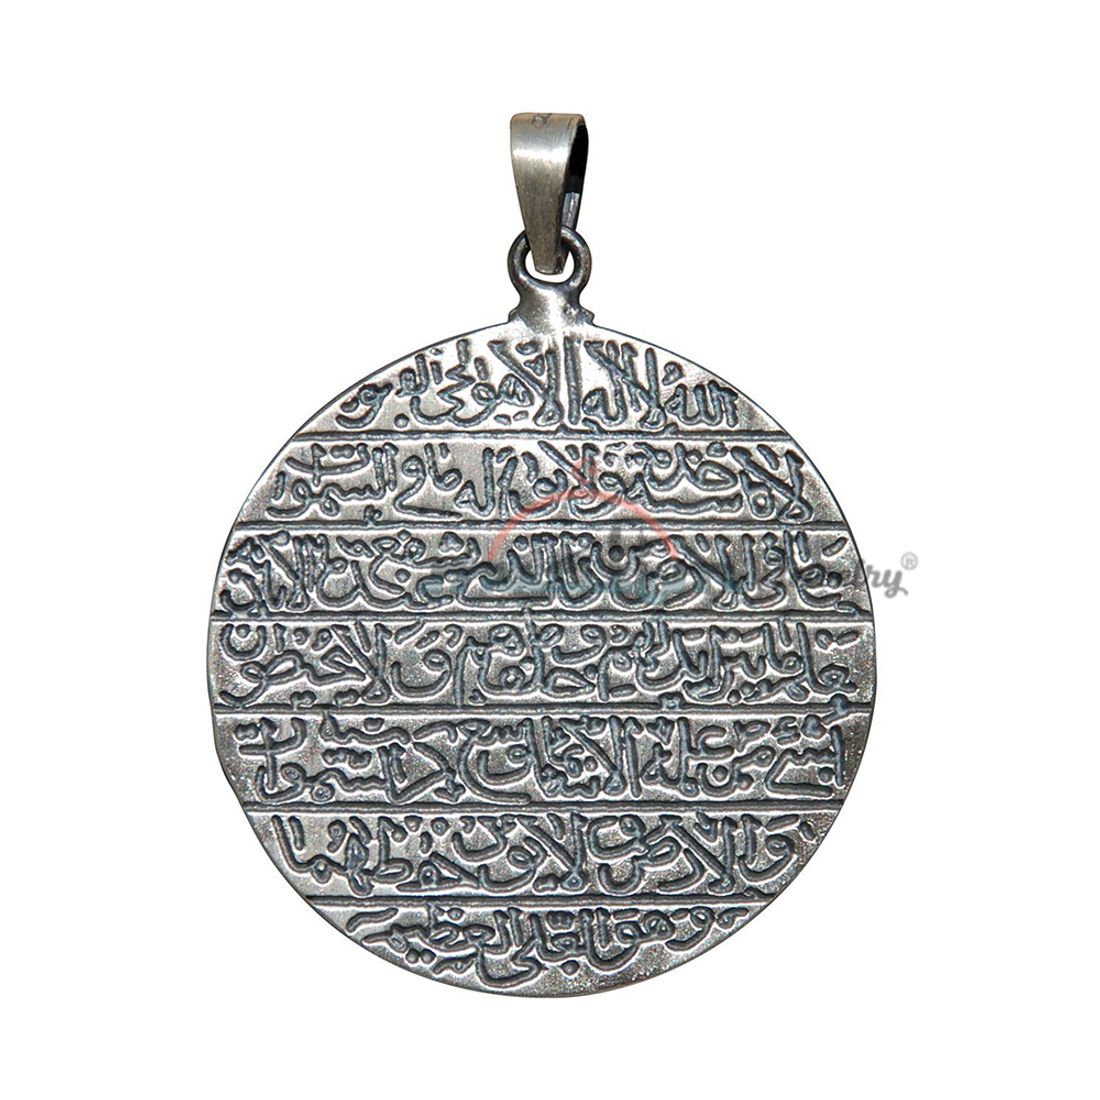 Large 3.8cm Round Antique Script Ayetel-kursi Pendant Quranic